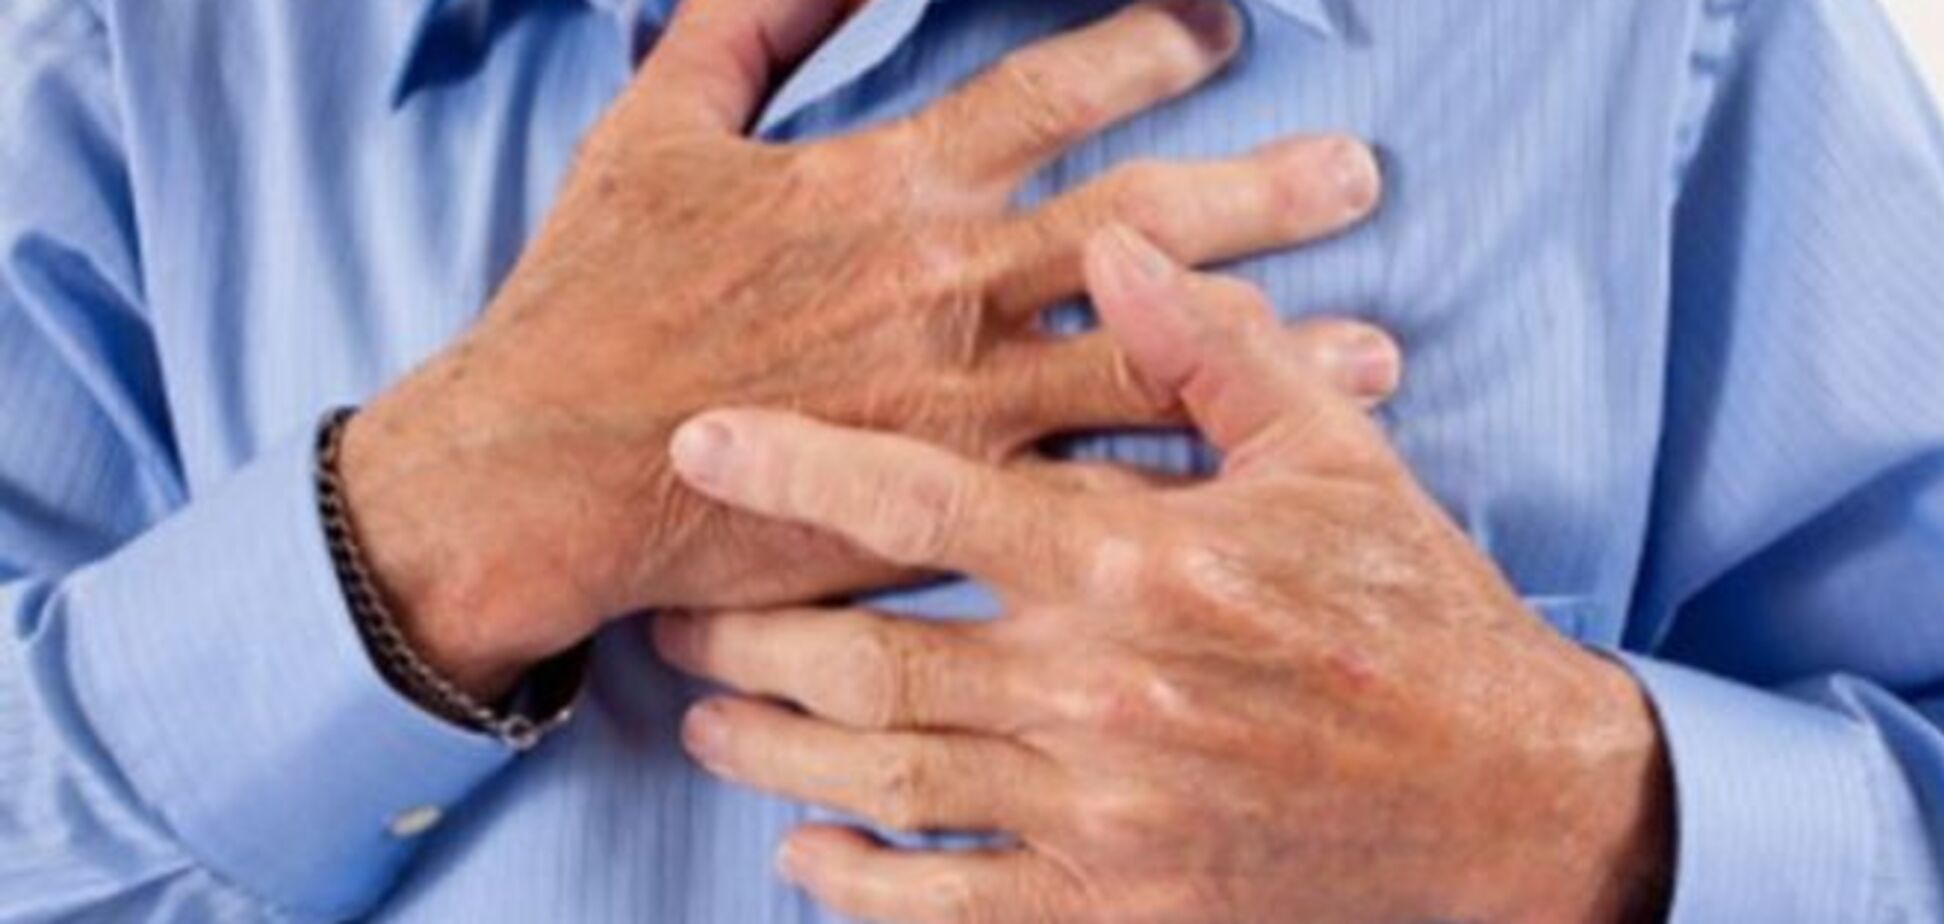 Продолжительность боли в груди подскажет: это сердечный приступ или 'просто кольнуло'